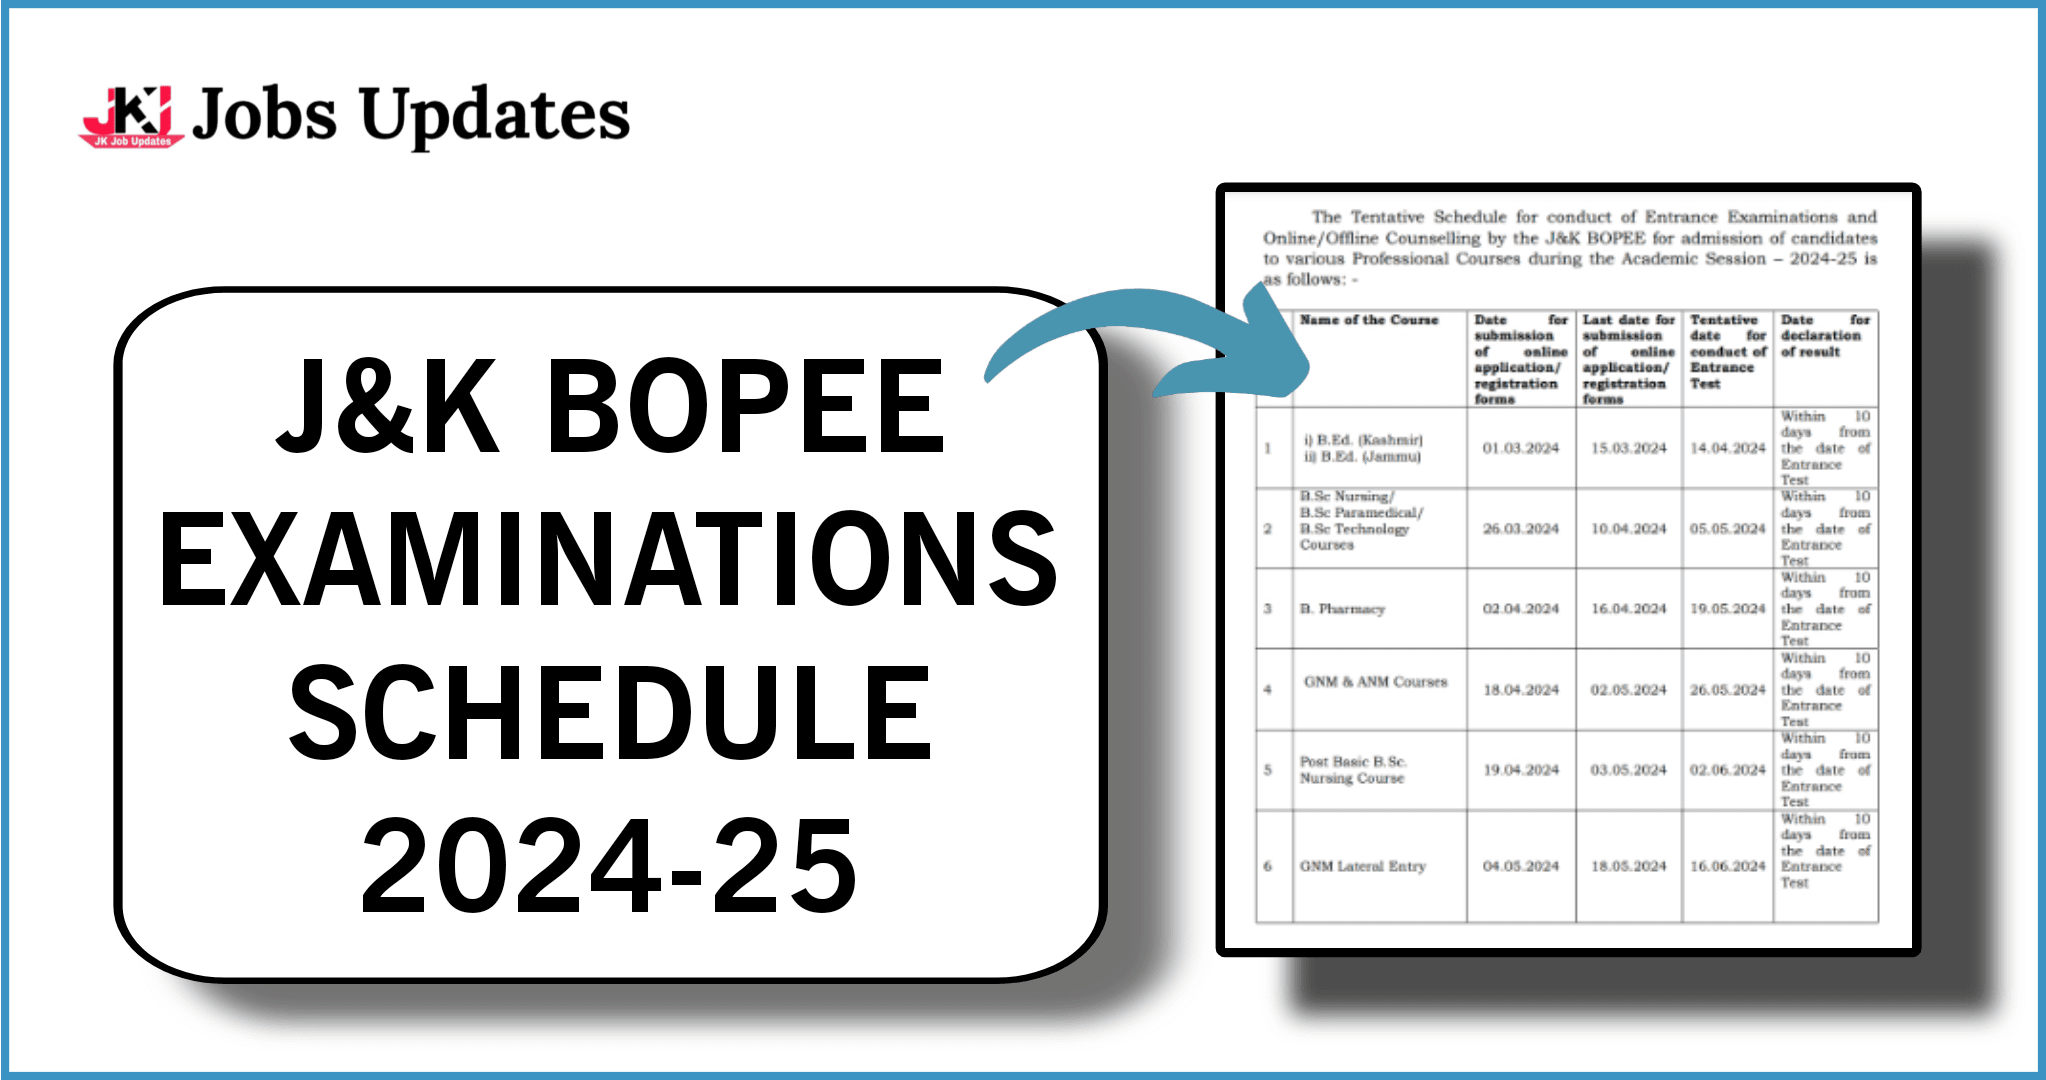 j&k bopee schedule 2024 25